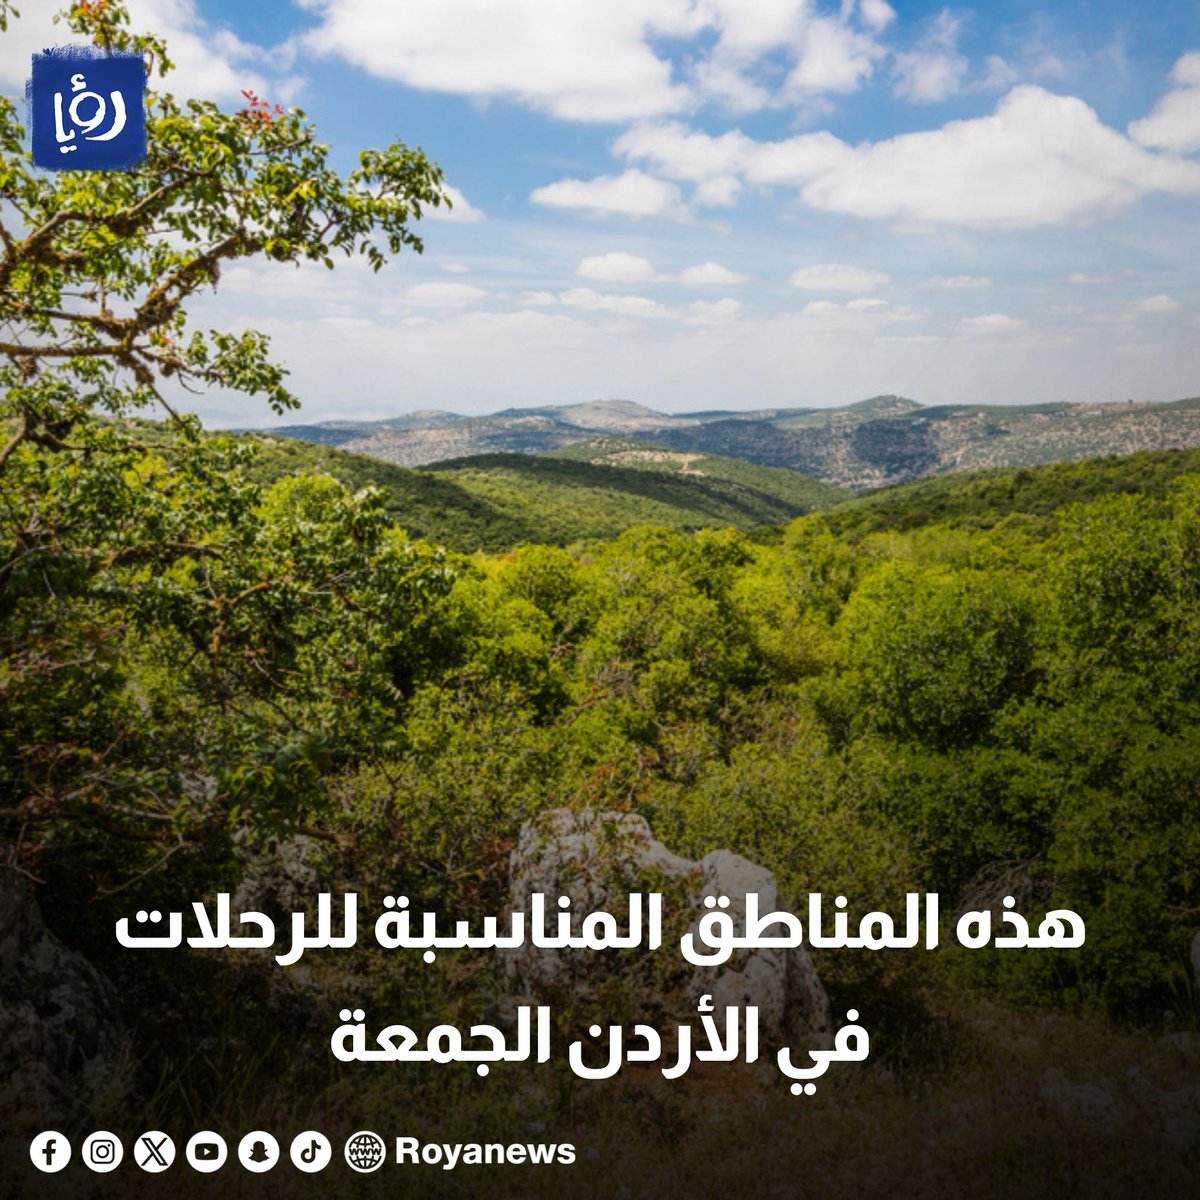 هذه المناطق المناسبة للرحلات في الأردن الجمعة royanews.tv/news/326457 #رؤيا_الإخباري #الأردن #عاجل #طقس